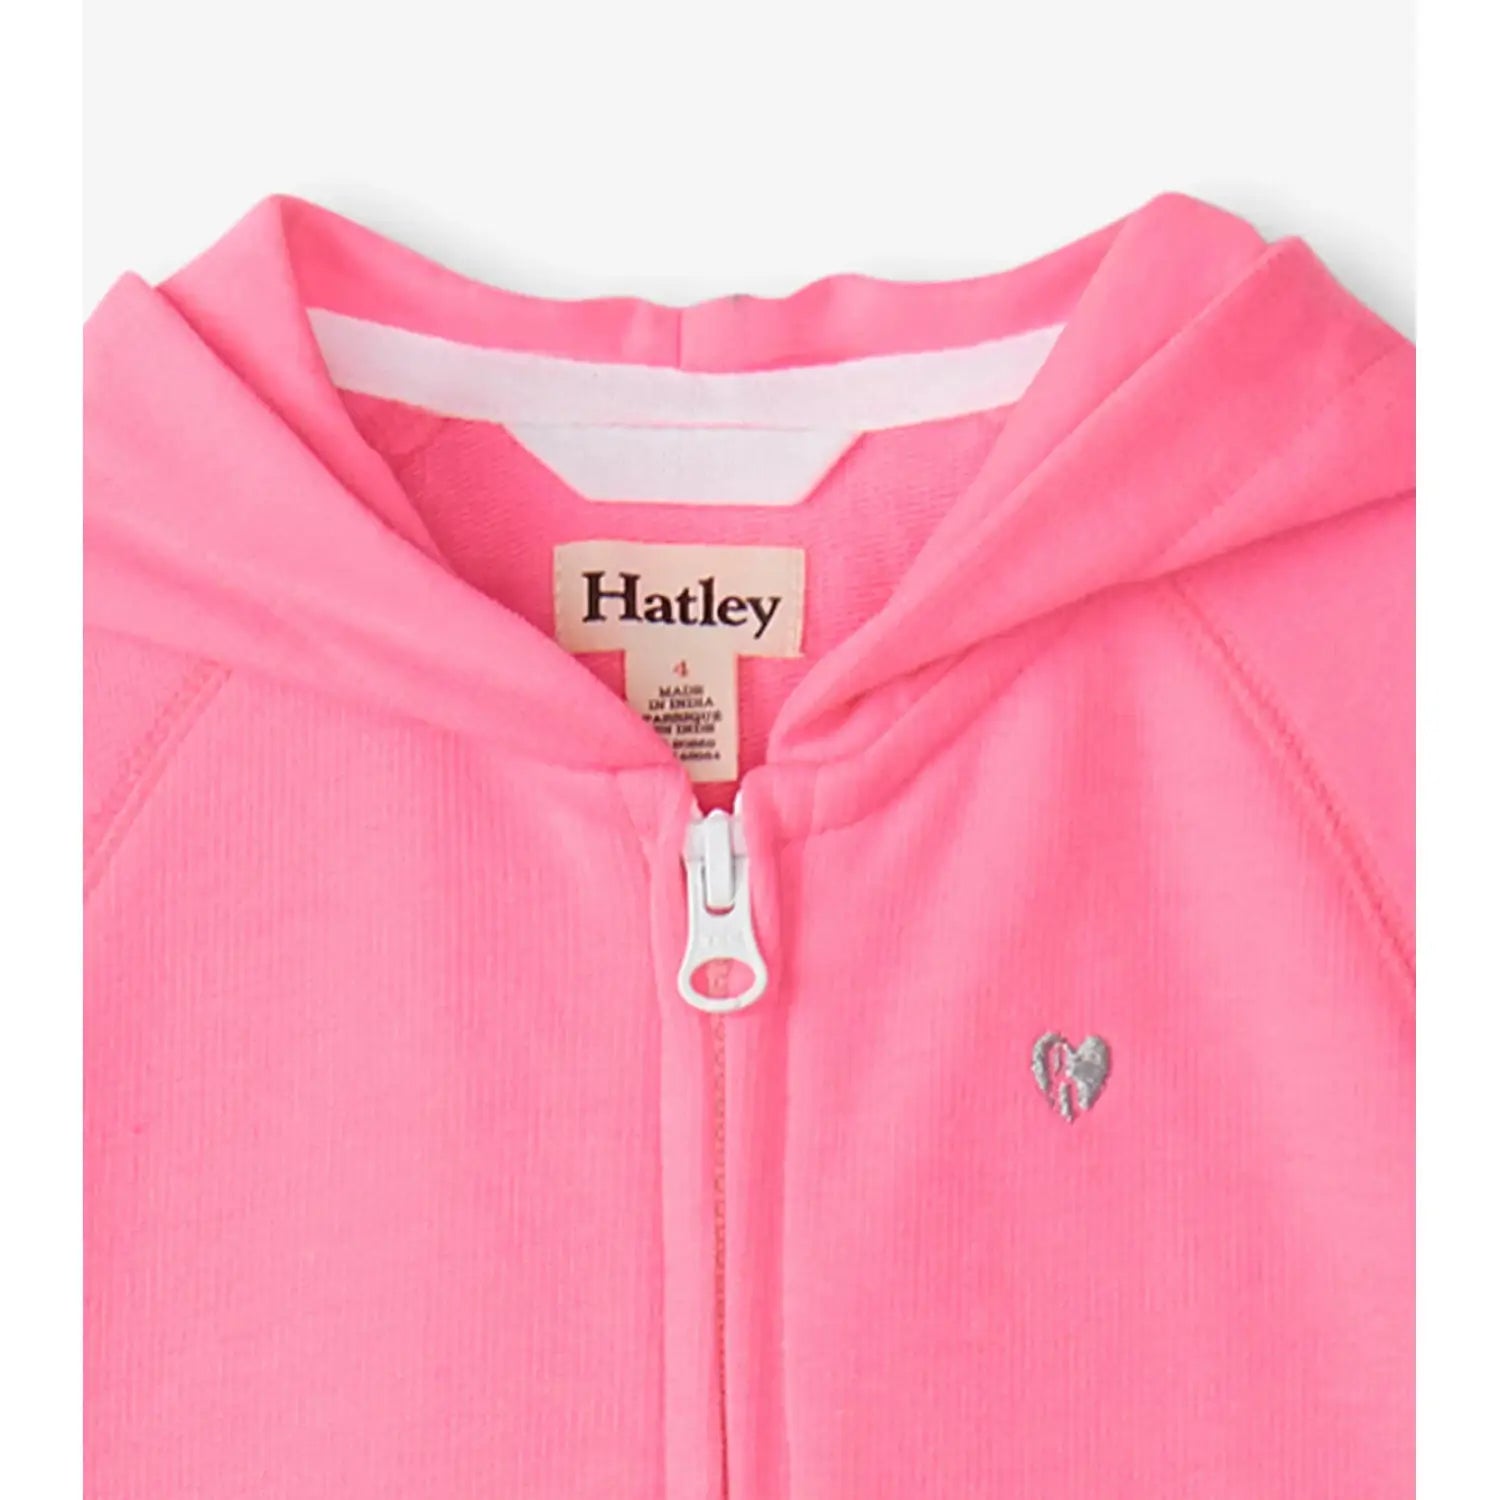 Hatley Girl's Pink Neon Raglan Hoodie. Front zipper view.